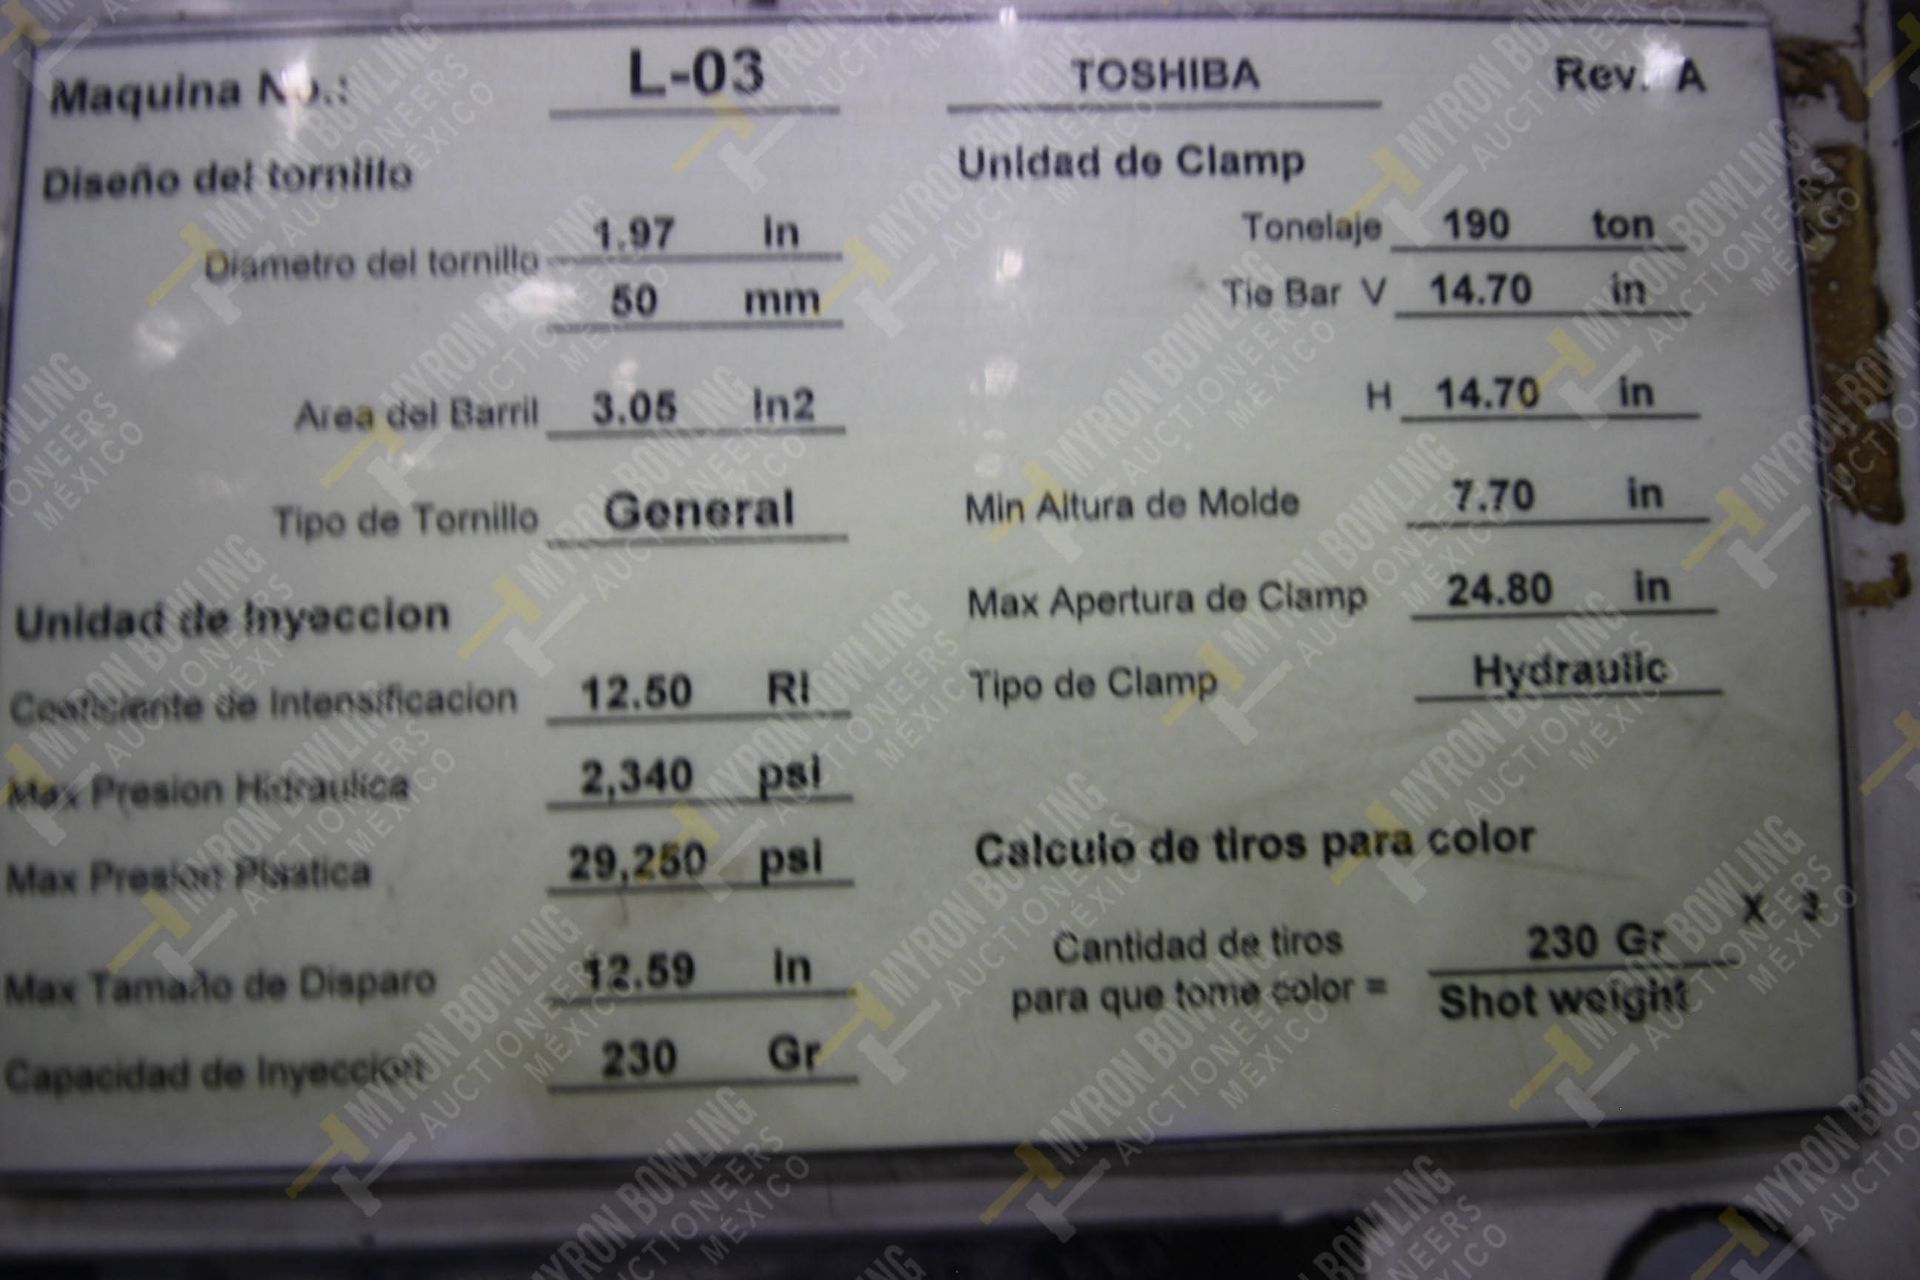 INYECTORA DE PLASTICO, MARCA TOSHIBA ISG 190, NO. SERIE 742905, NO. ACTIVO L03, AÑO 1997, MODELO IS - Image 16 of 17